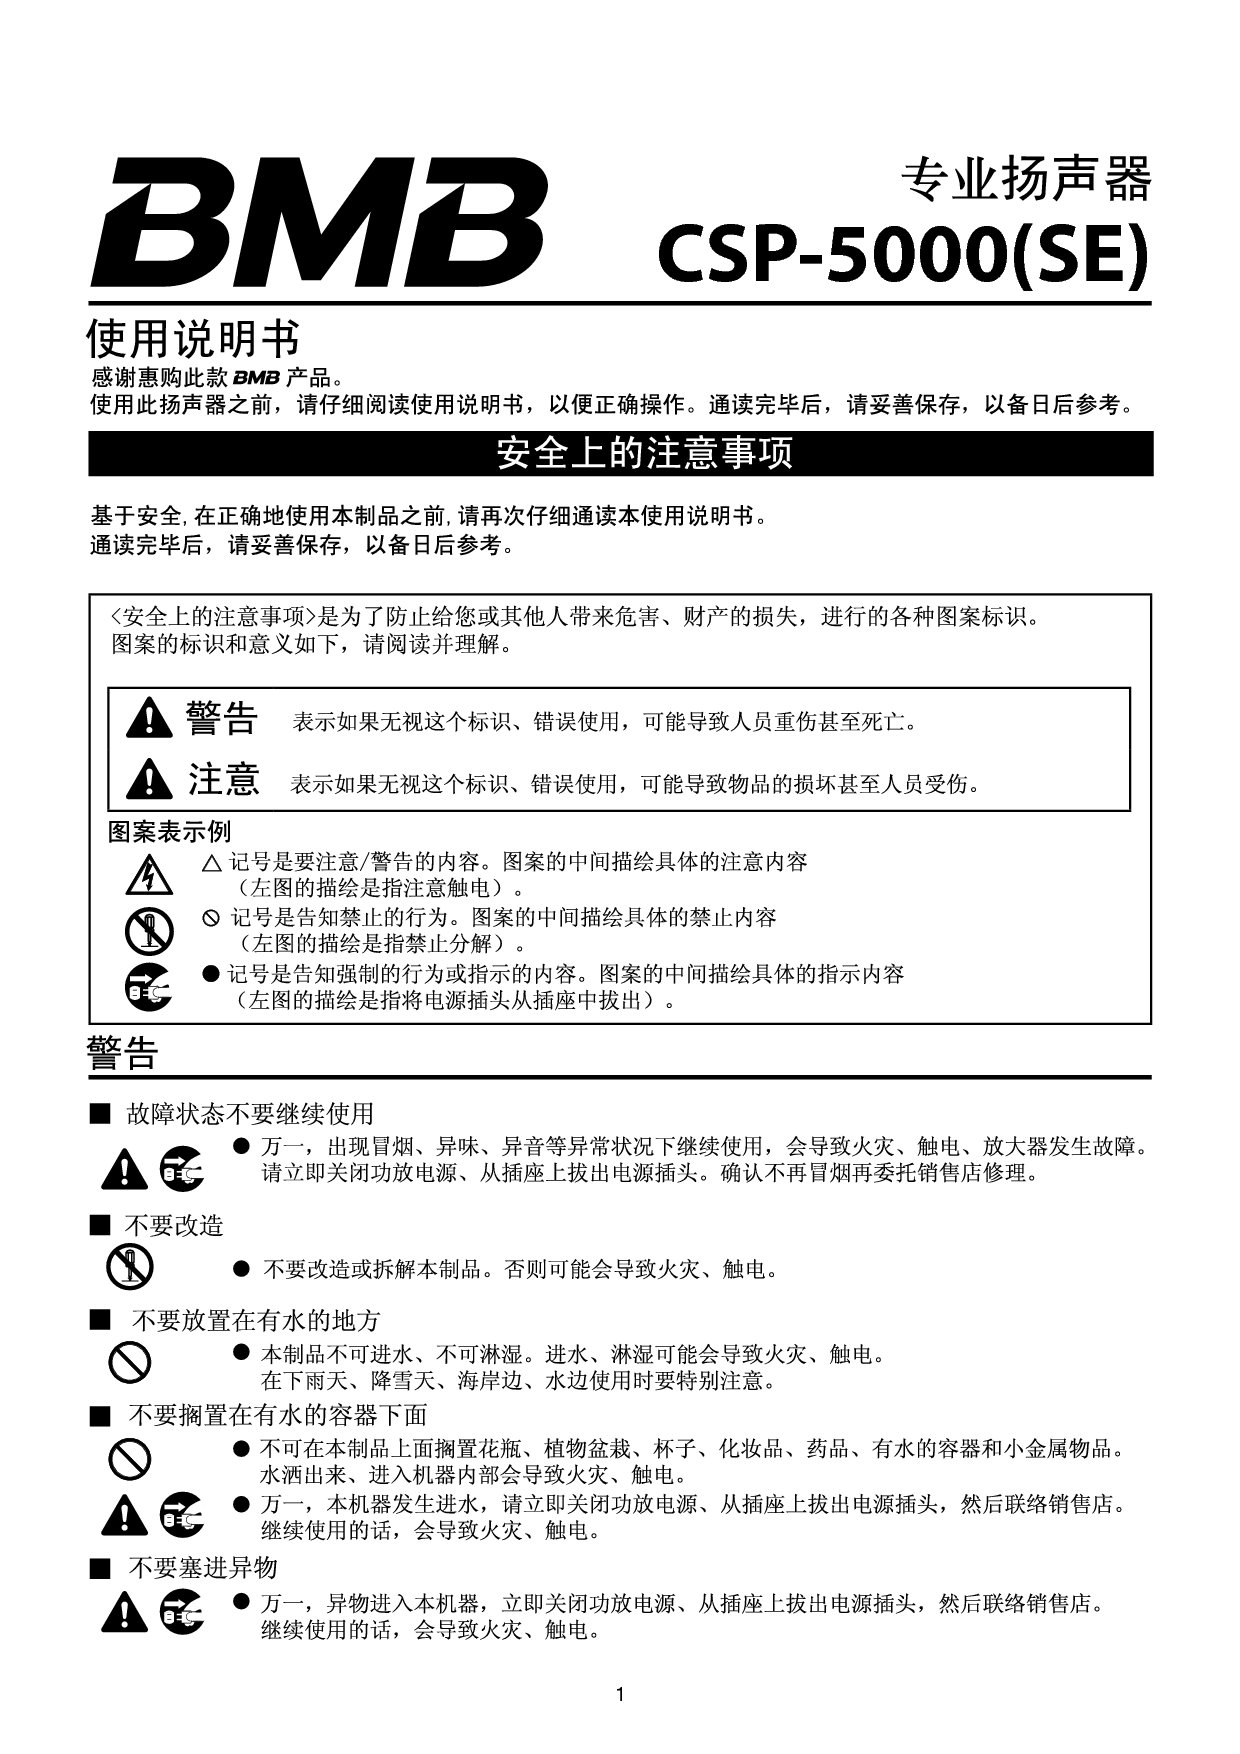 美音美 BMB CSP-5000(SE) 使用说明书 封面